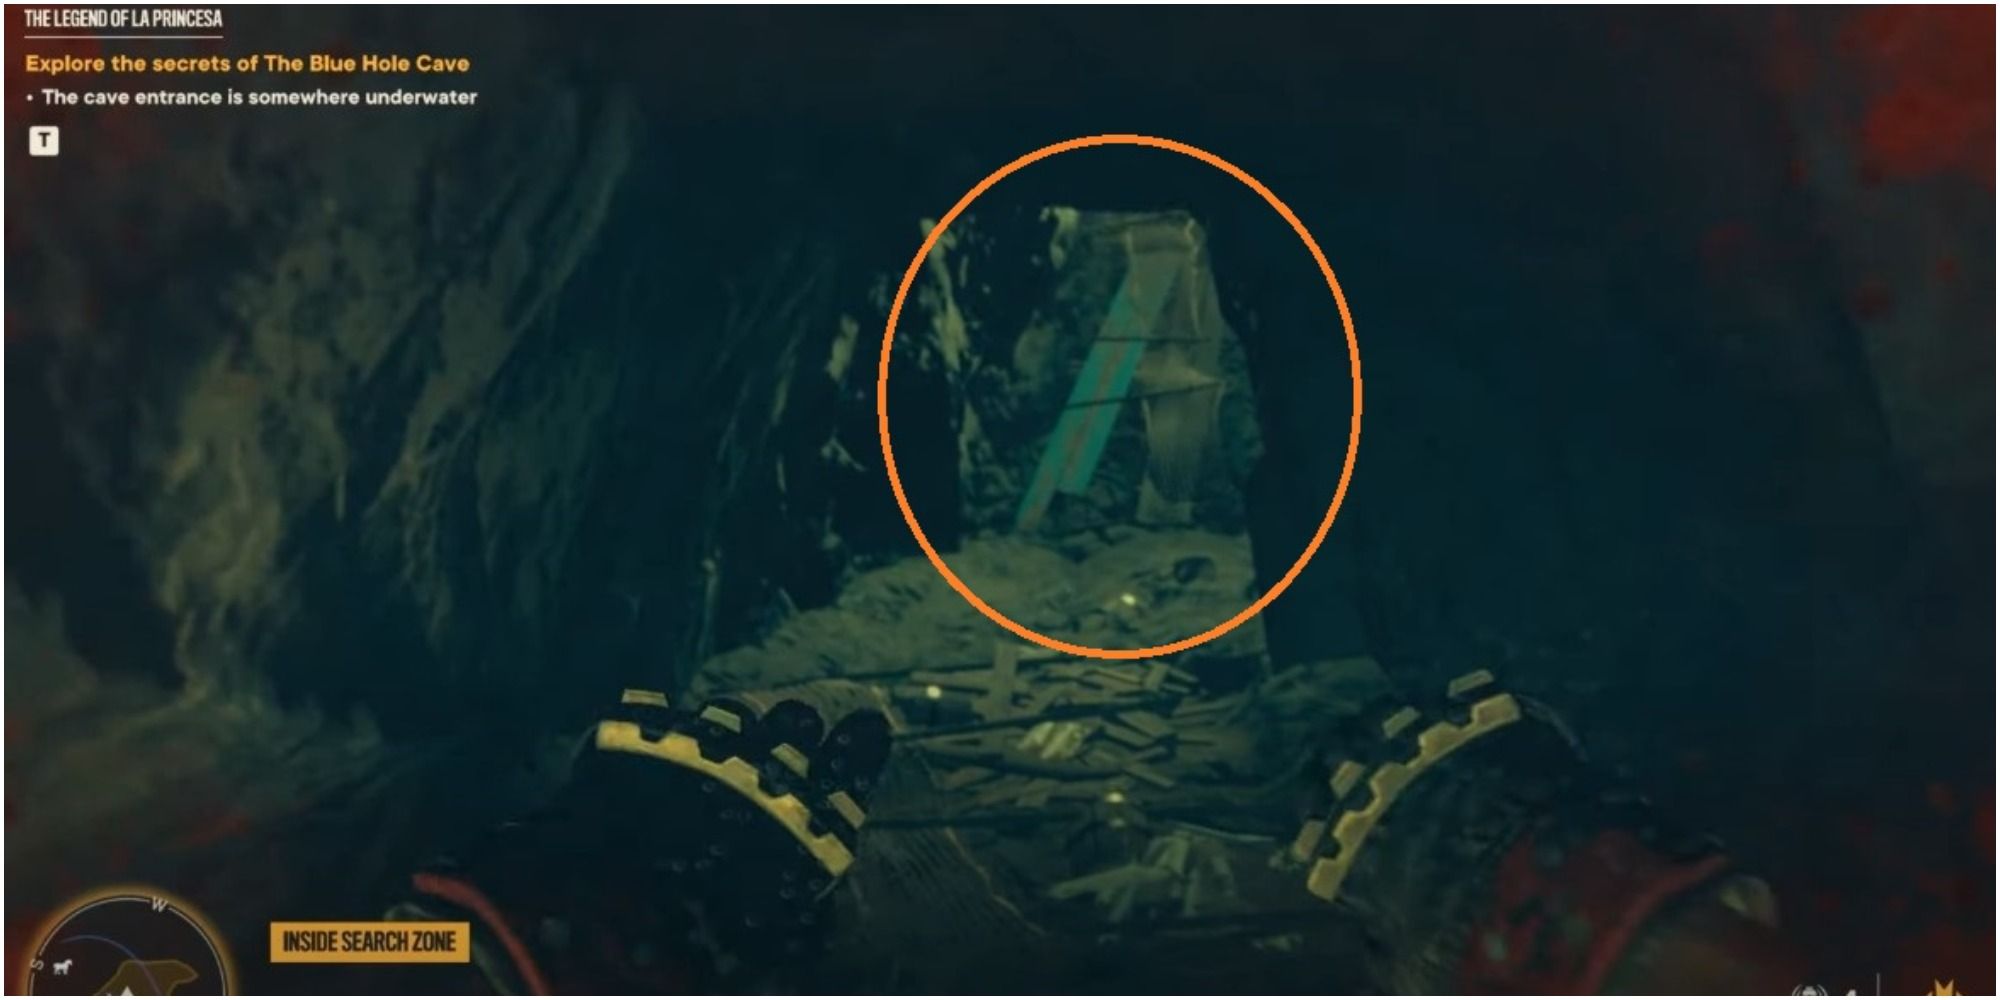 Far Cry 6 Swimming Toward The Blue Boards In The La Princesa Cave